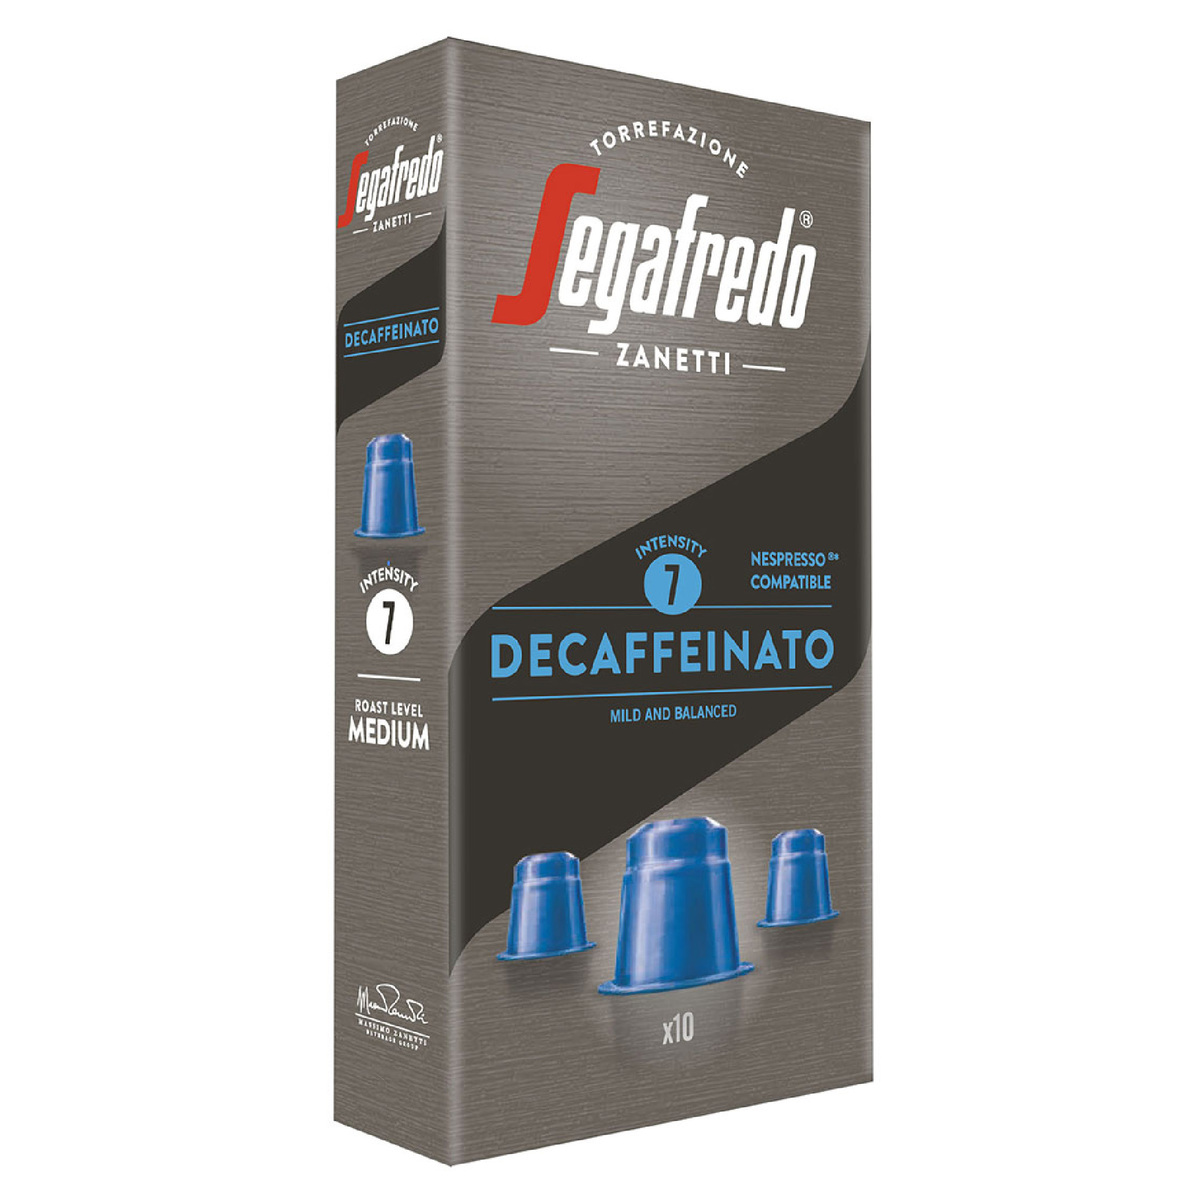 Segafredo Zanetti Decaffeinato Coffee 10 pcs 51 g